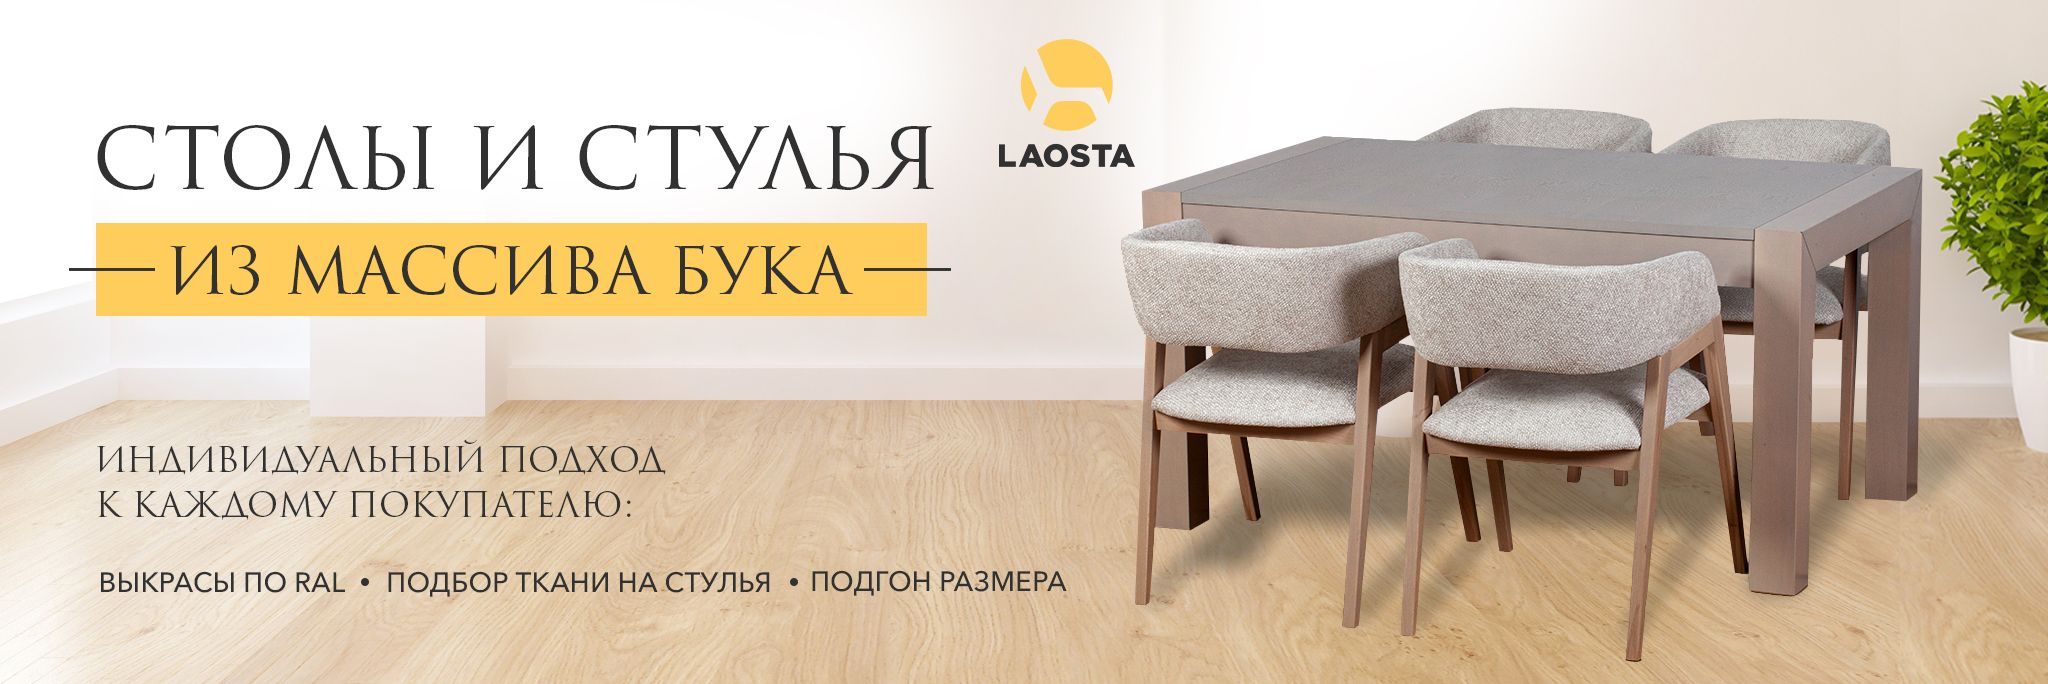 Столы из массива дерева на заказ, обеденные столы в Ростове-на-Дону